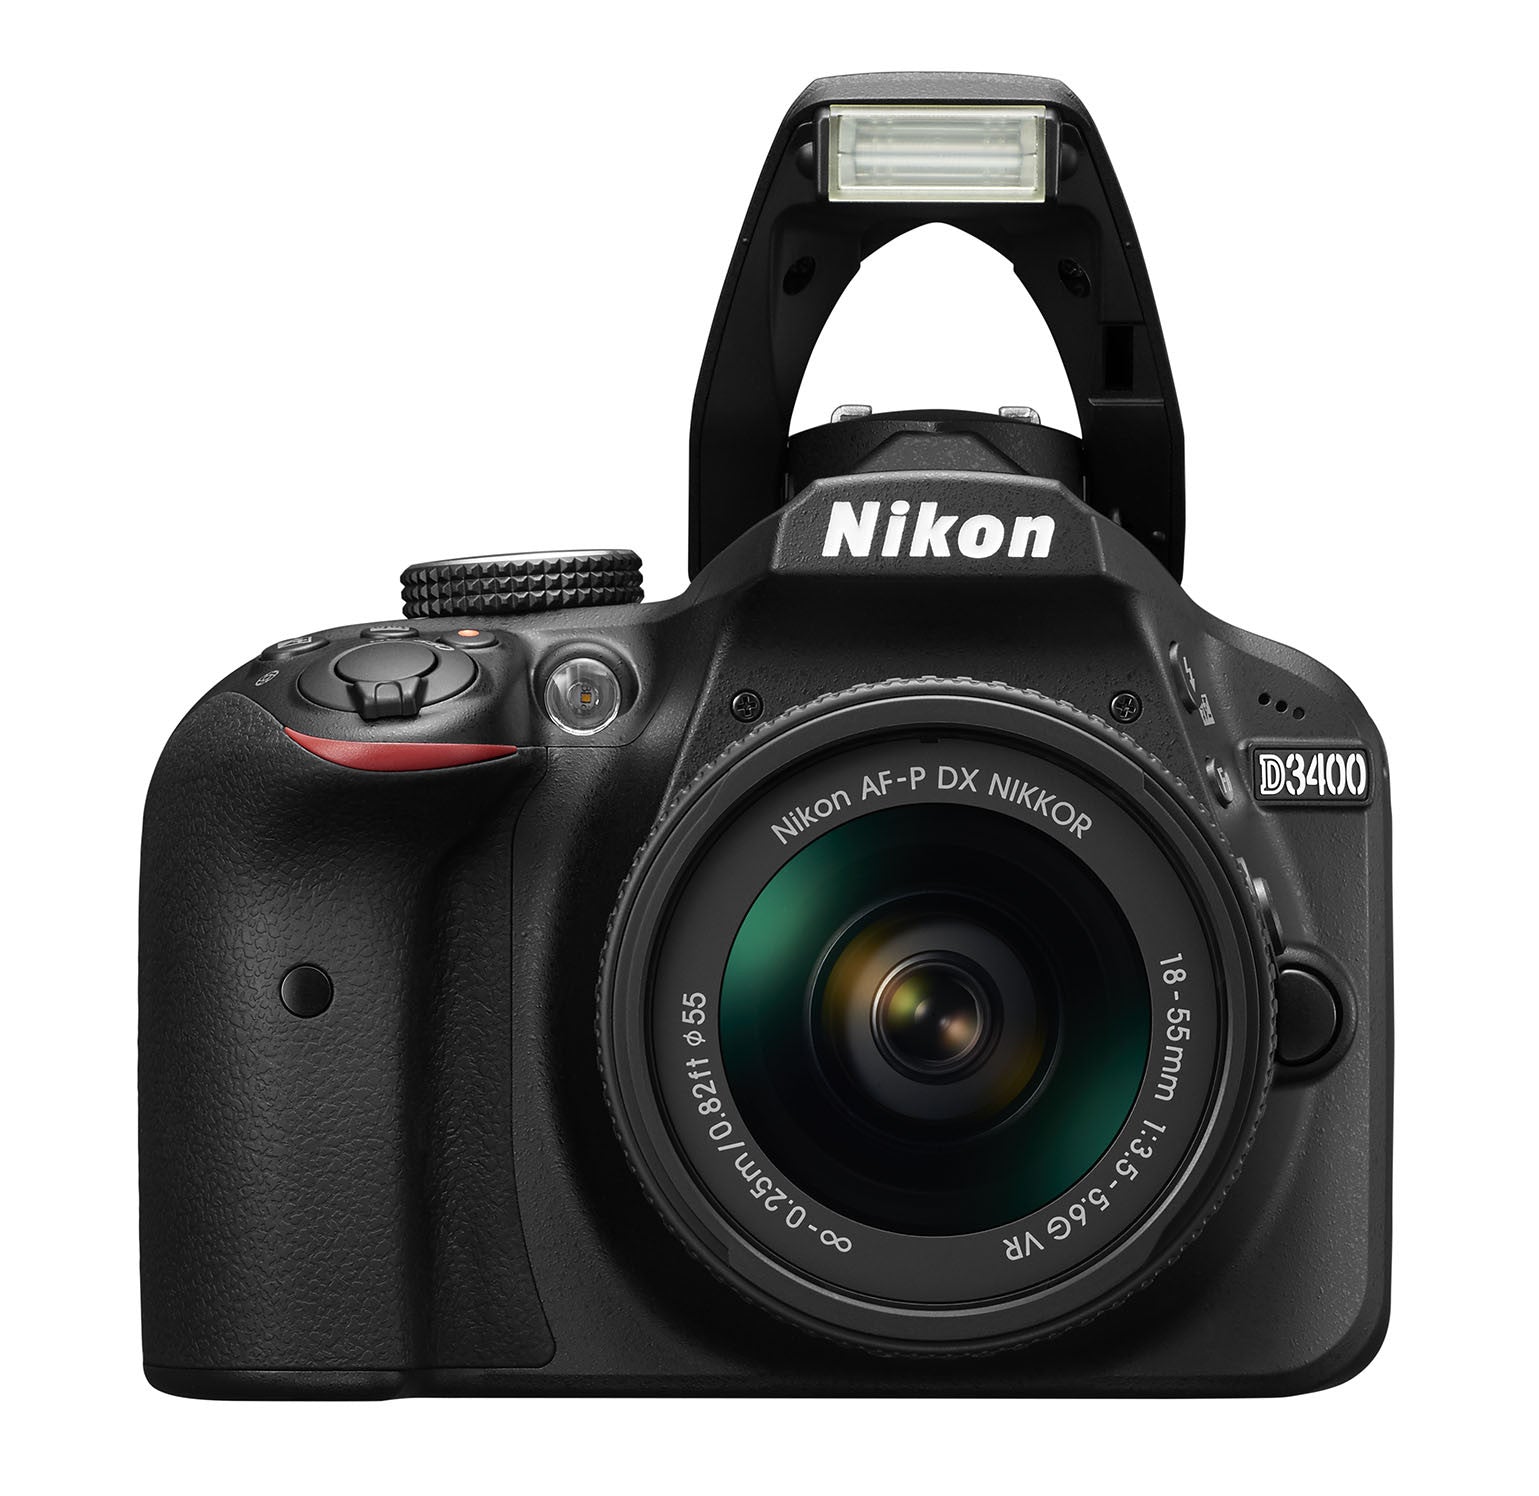 Nikon D3400 DX-format Digital SLR Kit w/ 18-55mm DX G VR Zoom Lens Black, camera dslr cameras, Nikon - Pictureline  - 9